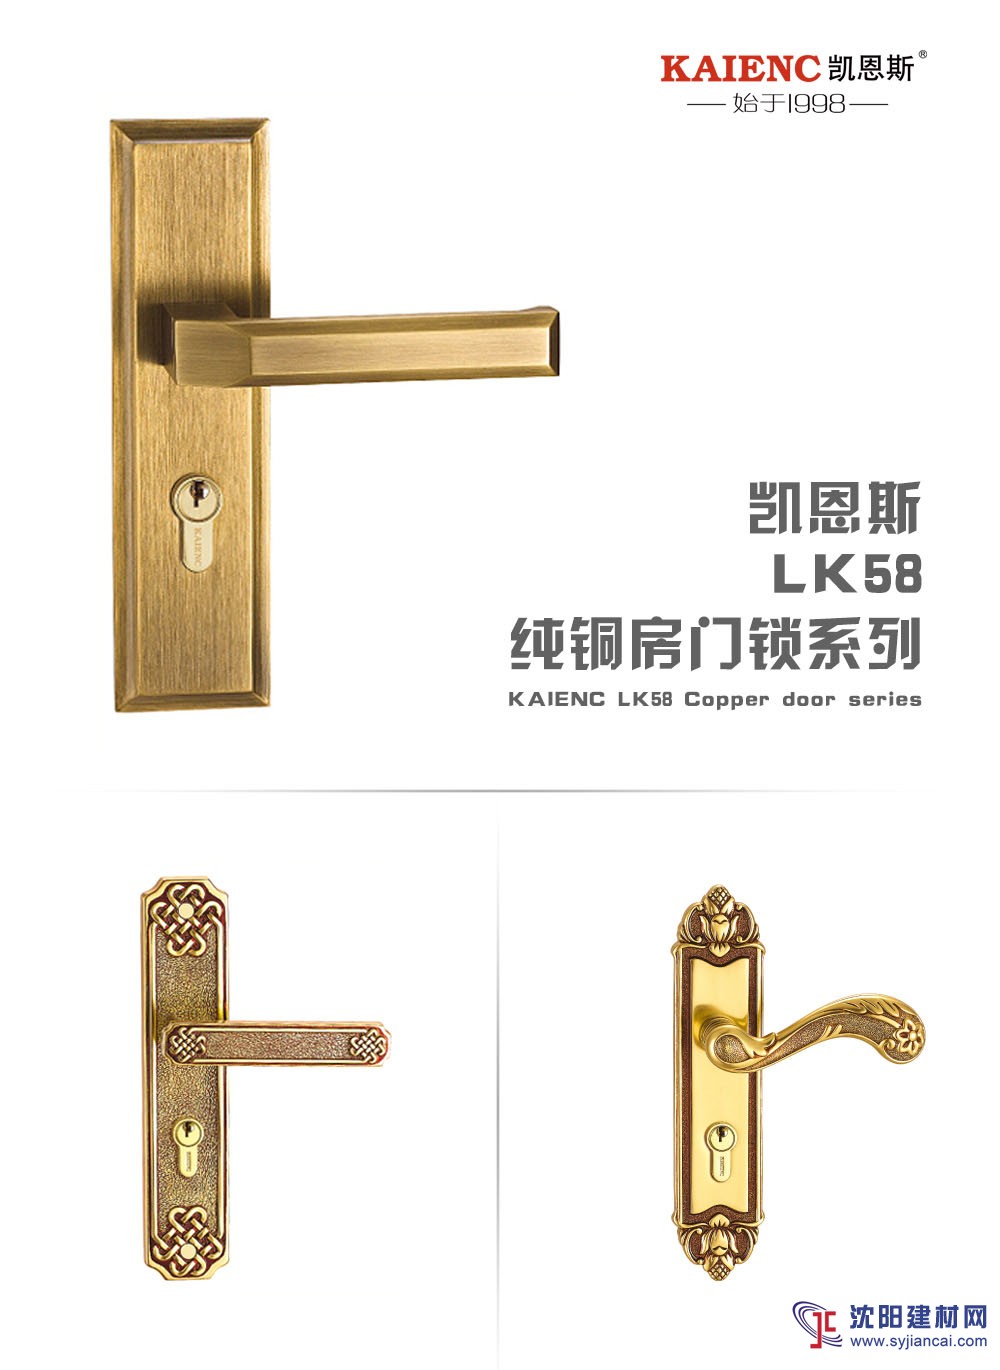 广东纯铜高档锁具 室内门锁 凯恩斯房间门锁厂家